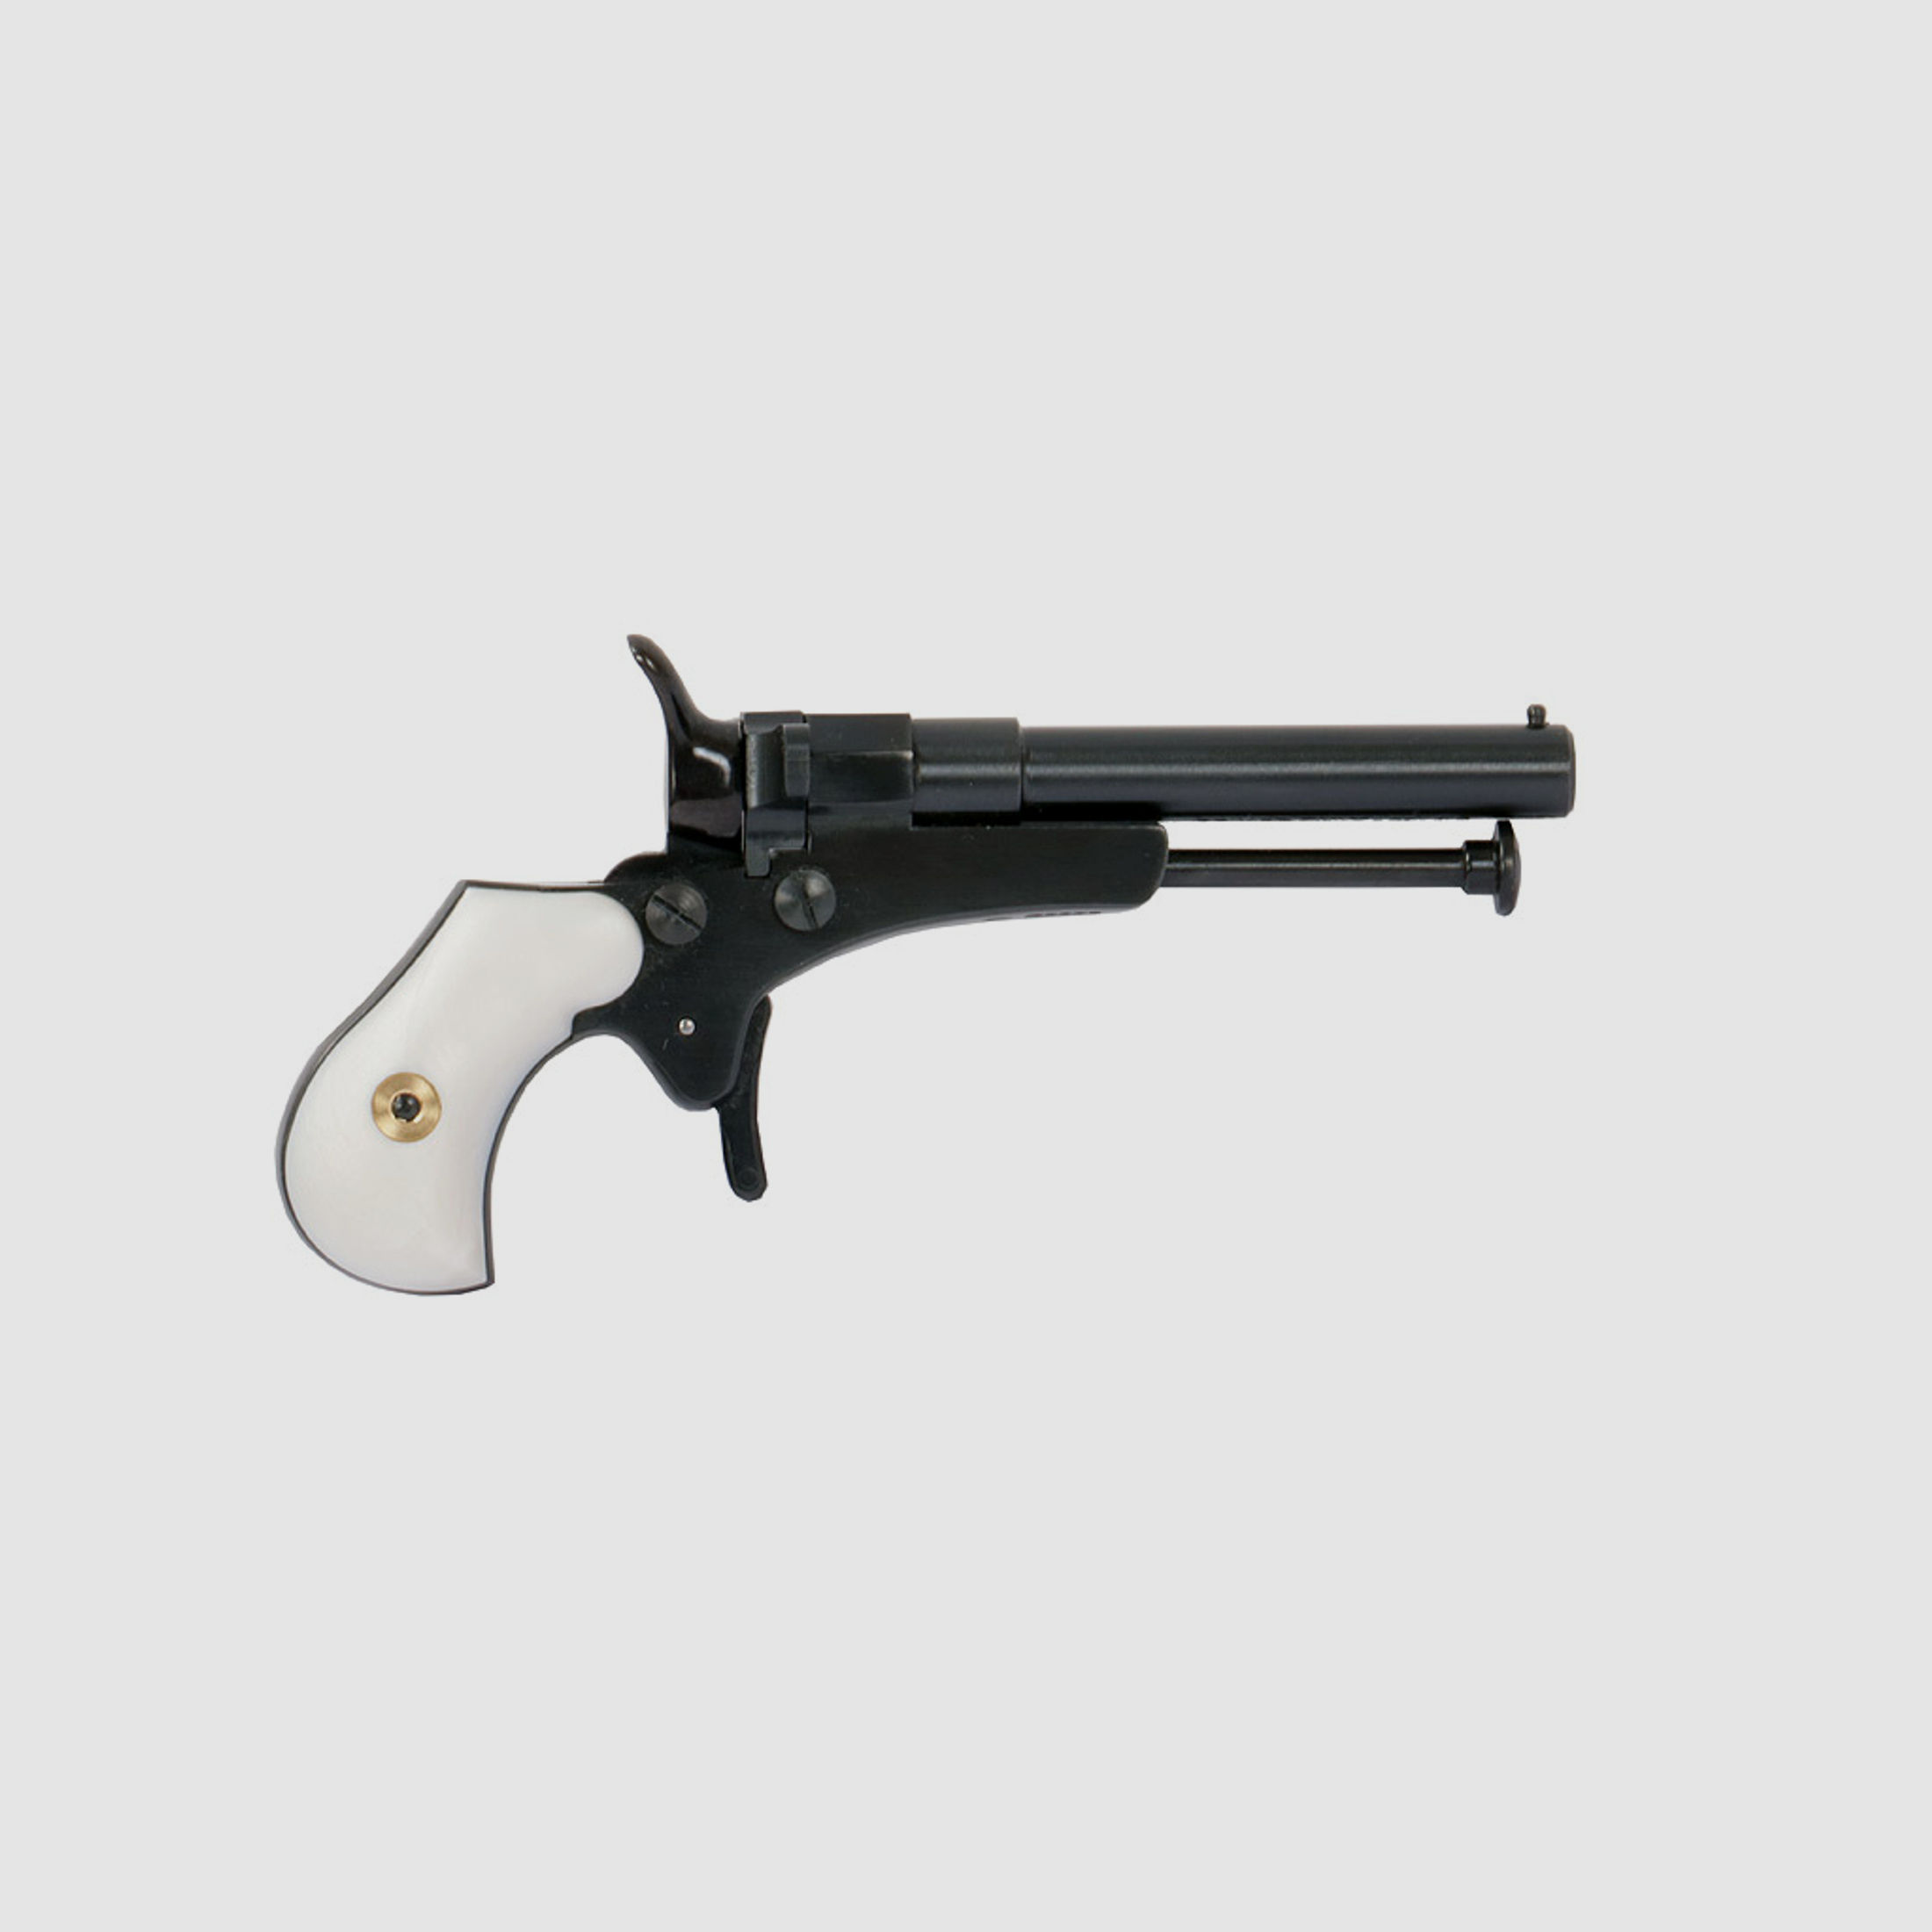 Perkussionspistole Pedersoli Derringer Guardian mit Perlmutt-Griffschalen, Kaliber 4,5 mm (P18)